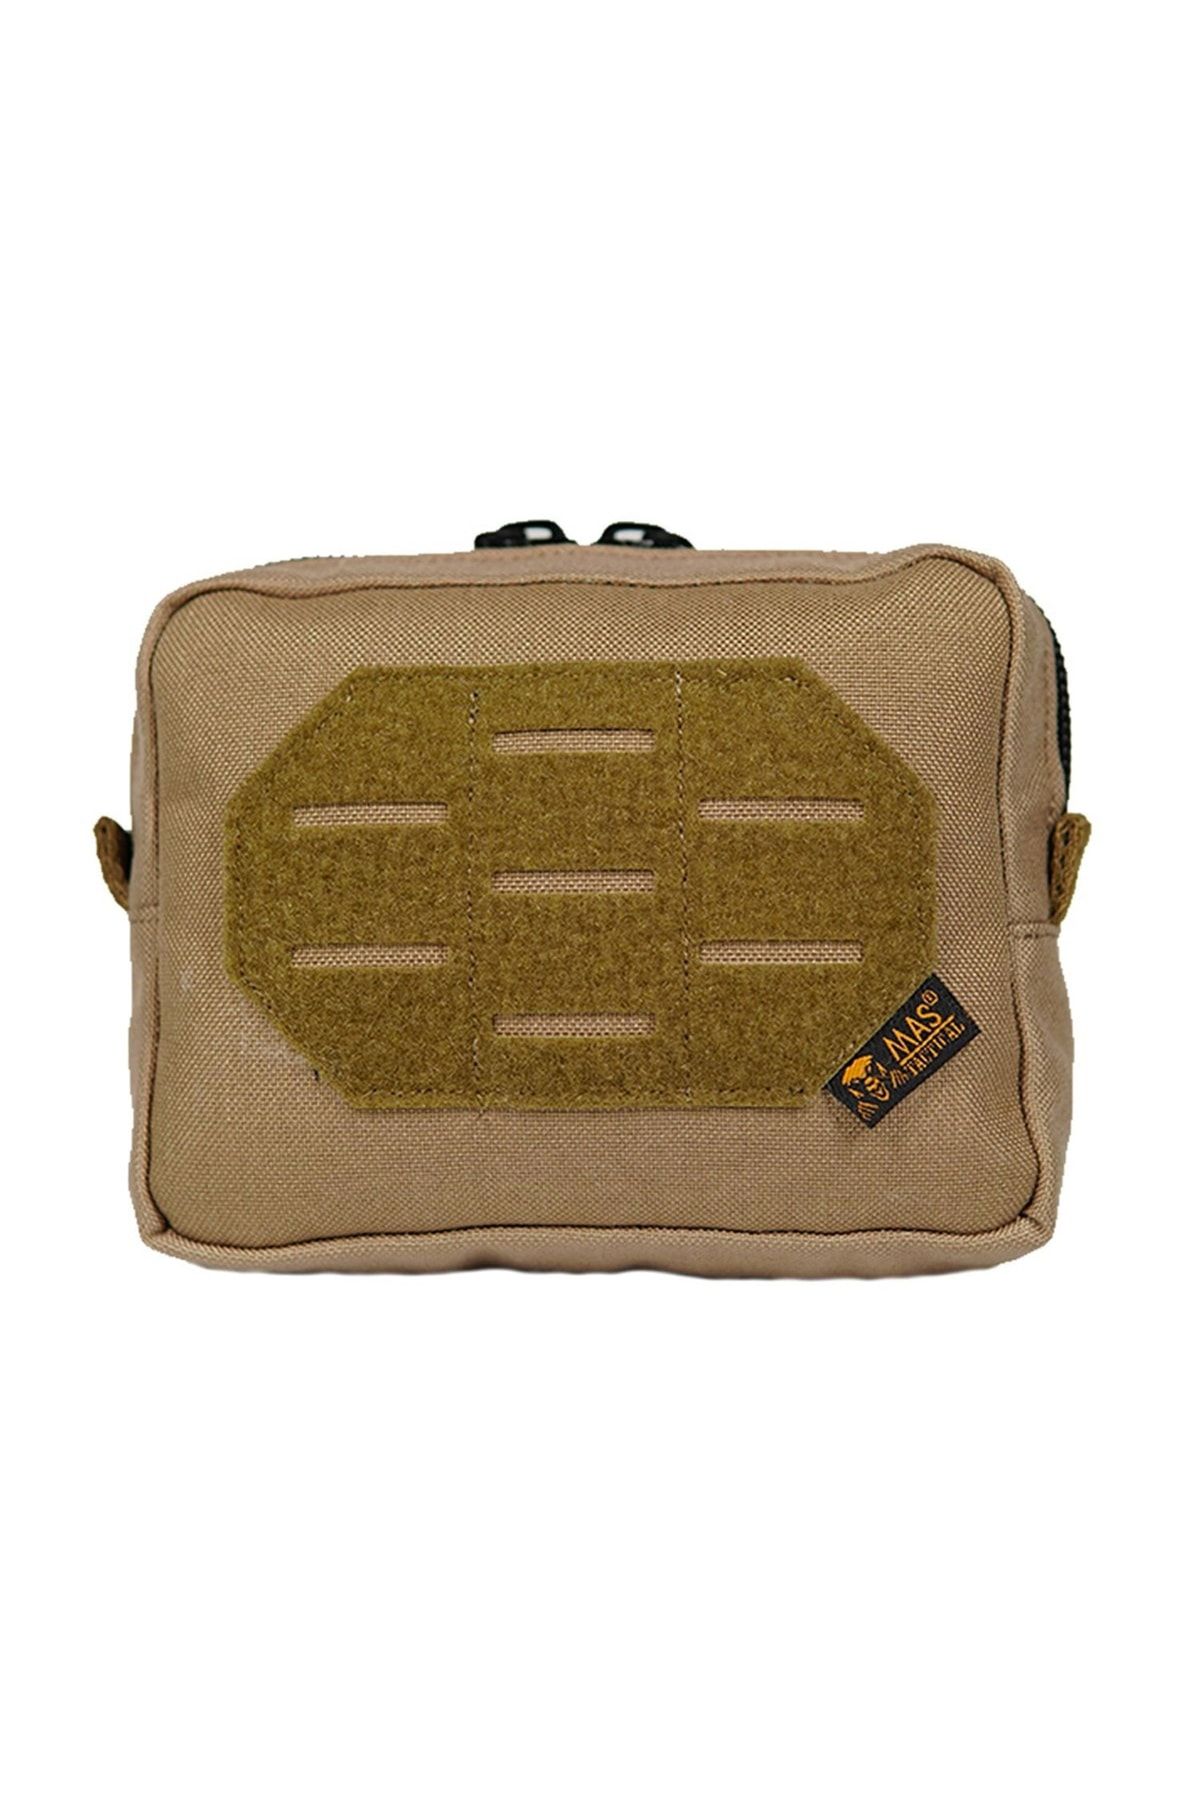 Mastactical Taktik Yardımcı Yatay Cep/çanta (16x13x5cm) - Haki